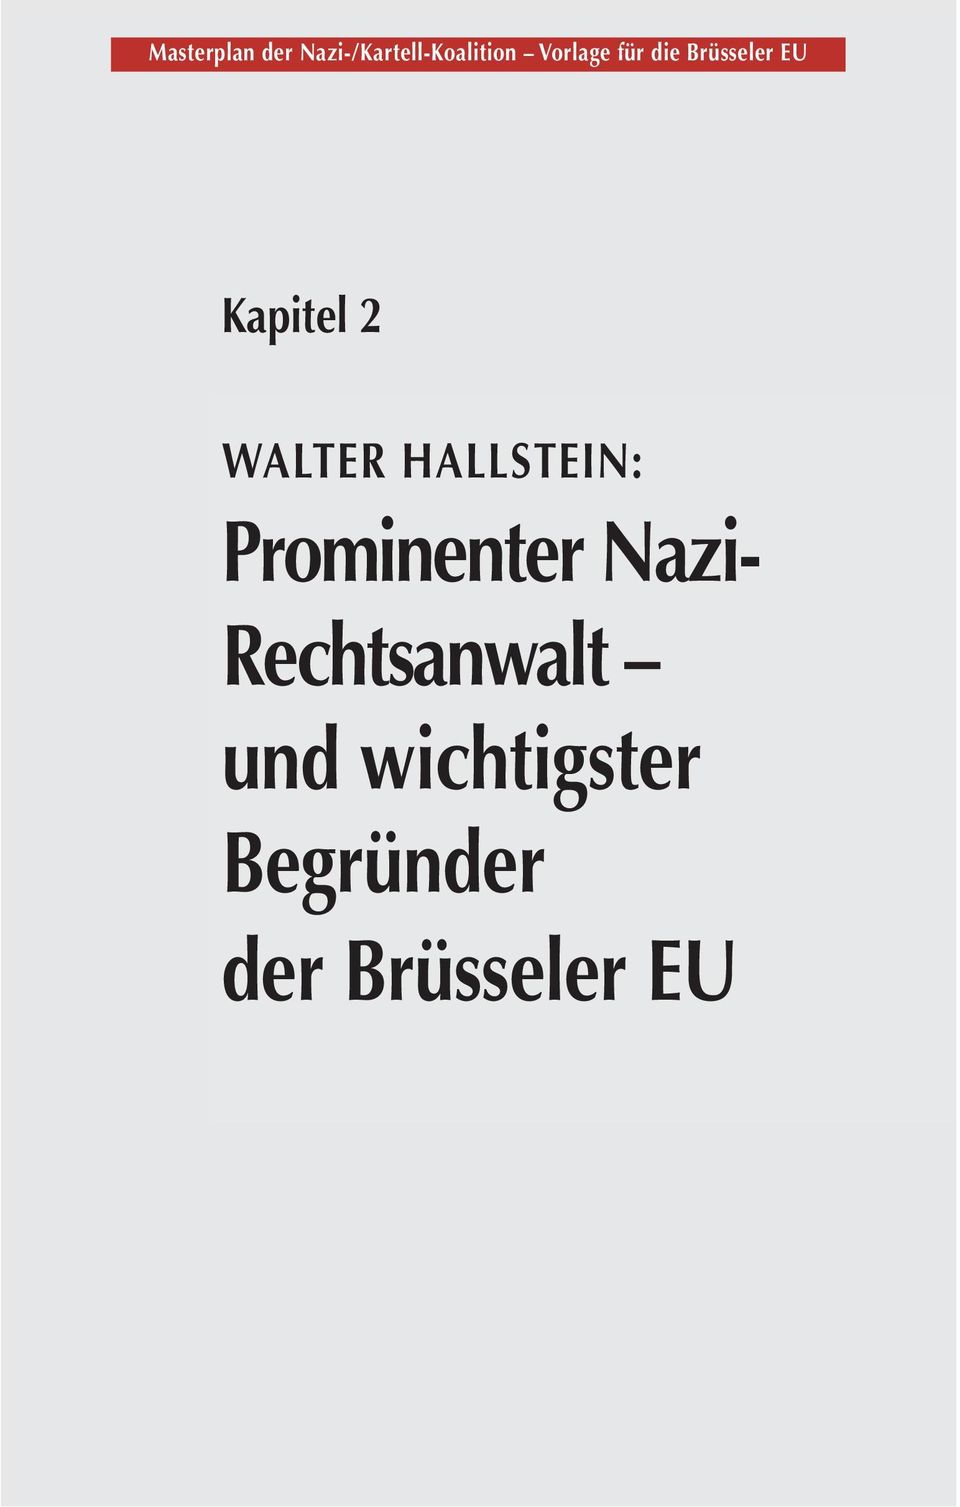 WALTER HALLSTEIN: Prominenter Nazi-